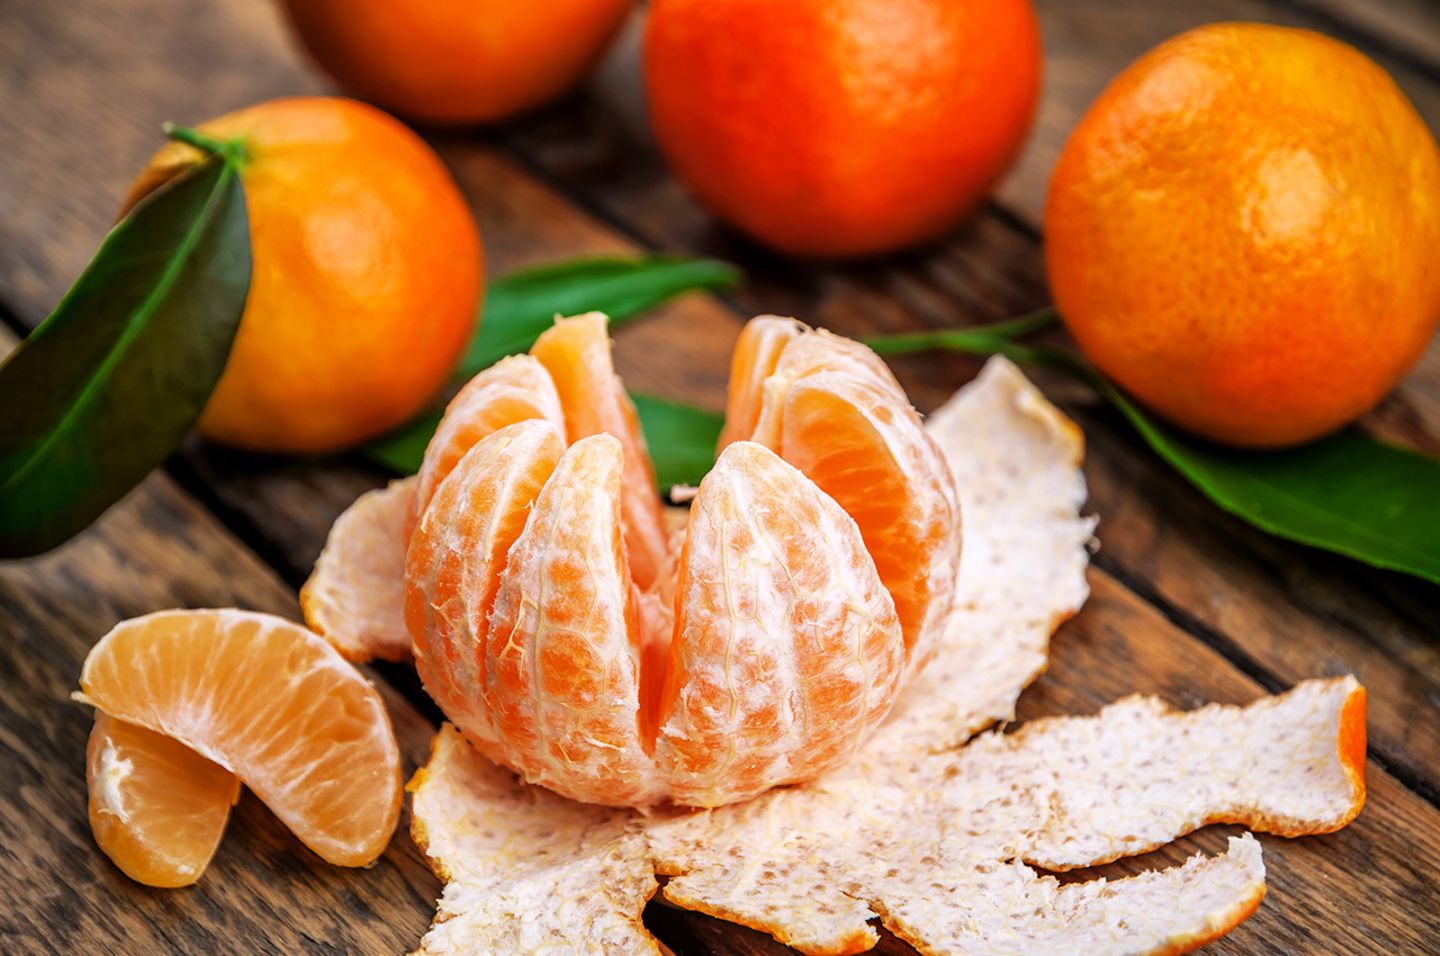 Wo ist der Unterschied: Mandarine oder Clementine?